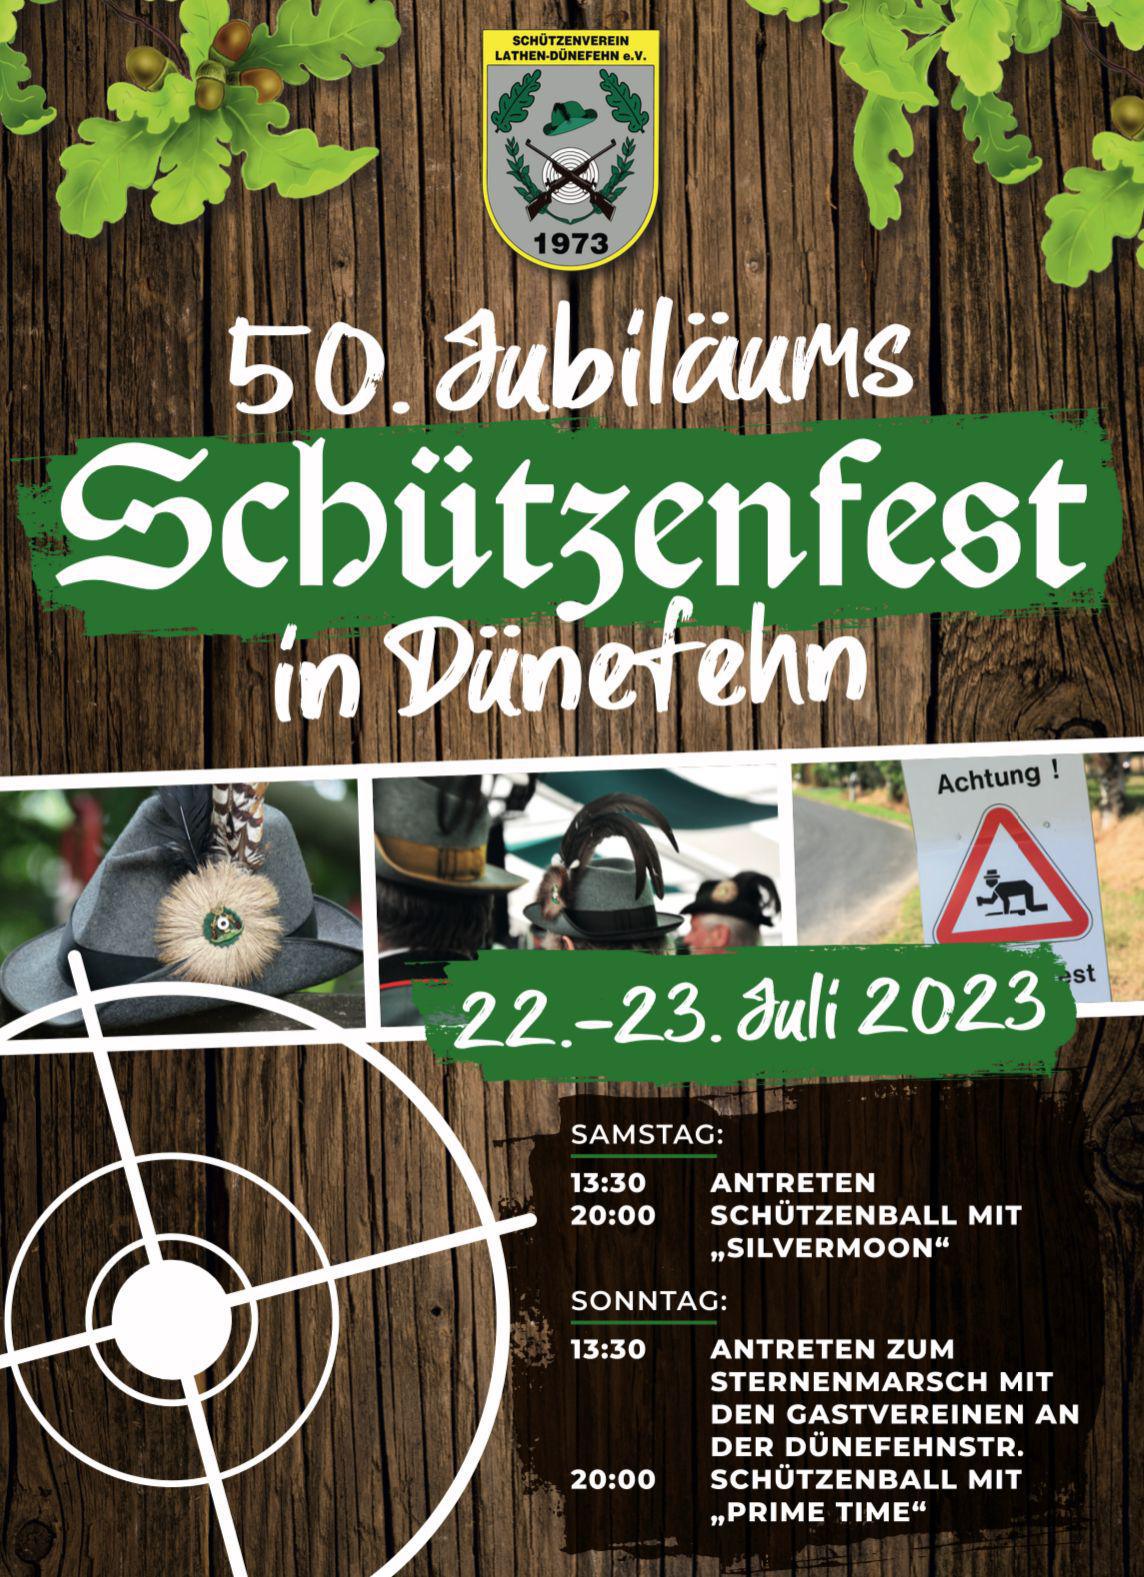 Jubiläumsschützenfest 50 Jahre Schützenverein Lathen-Dünefehn e.V.